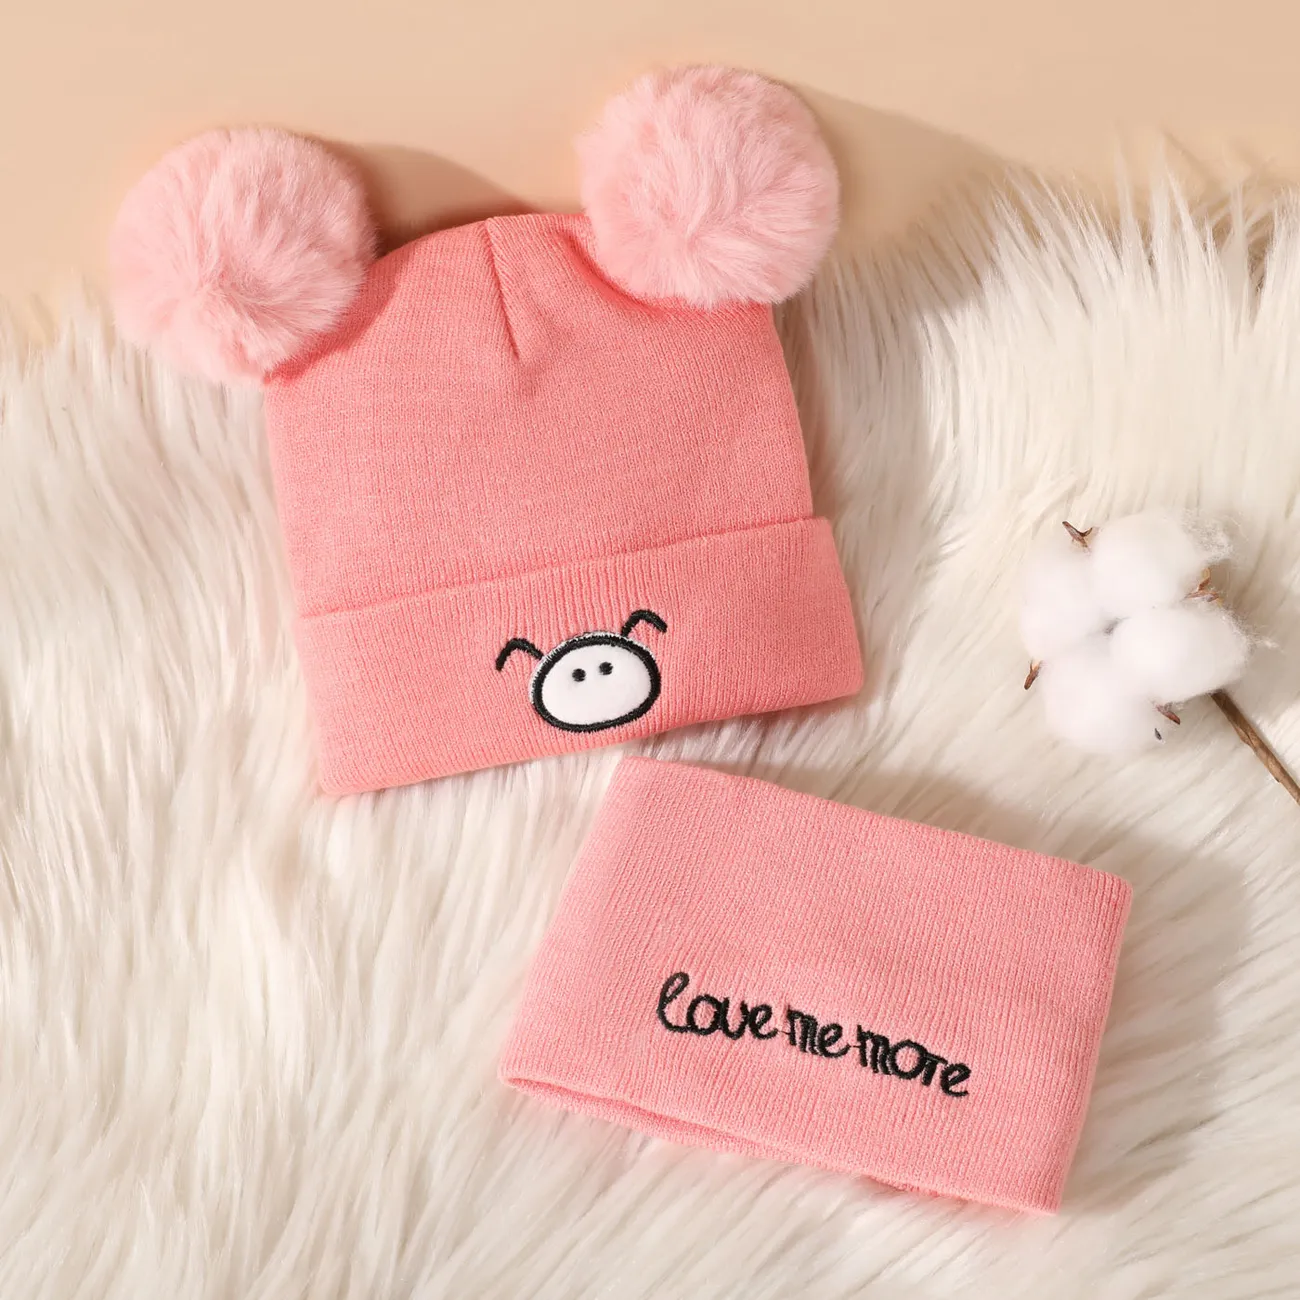 Baby Cute Pattern Pom Pom Decor Beanie Hat & Infinity Scarf Pink big image 1